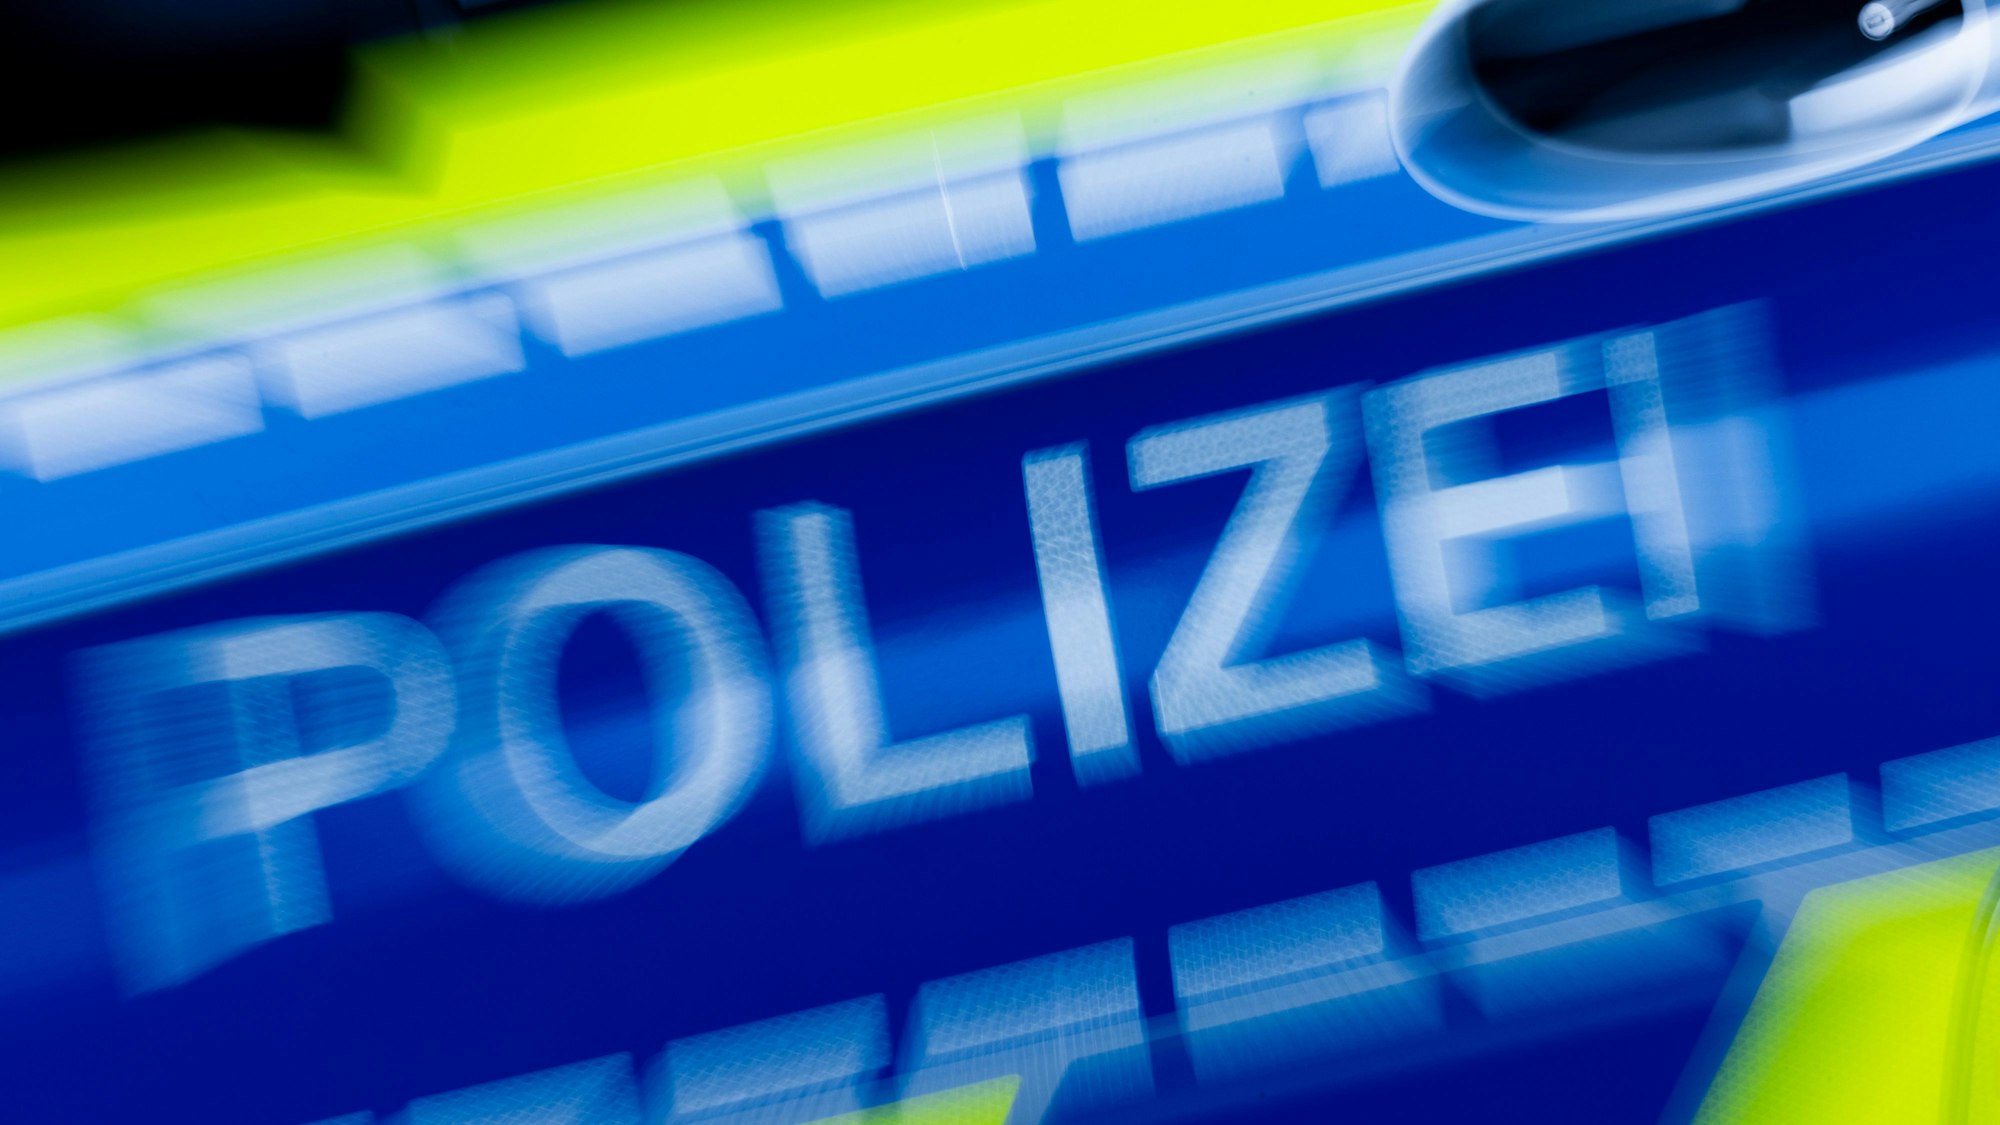 Die Polizei bittet um Hinweise zu dem Unfall in Köln-Weidenpesch. (Symbolbild)